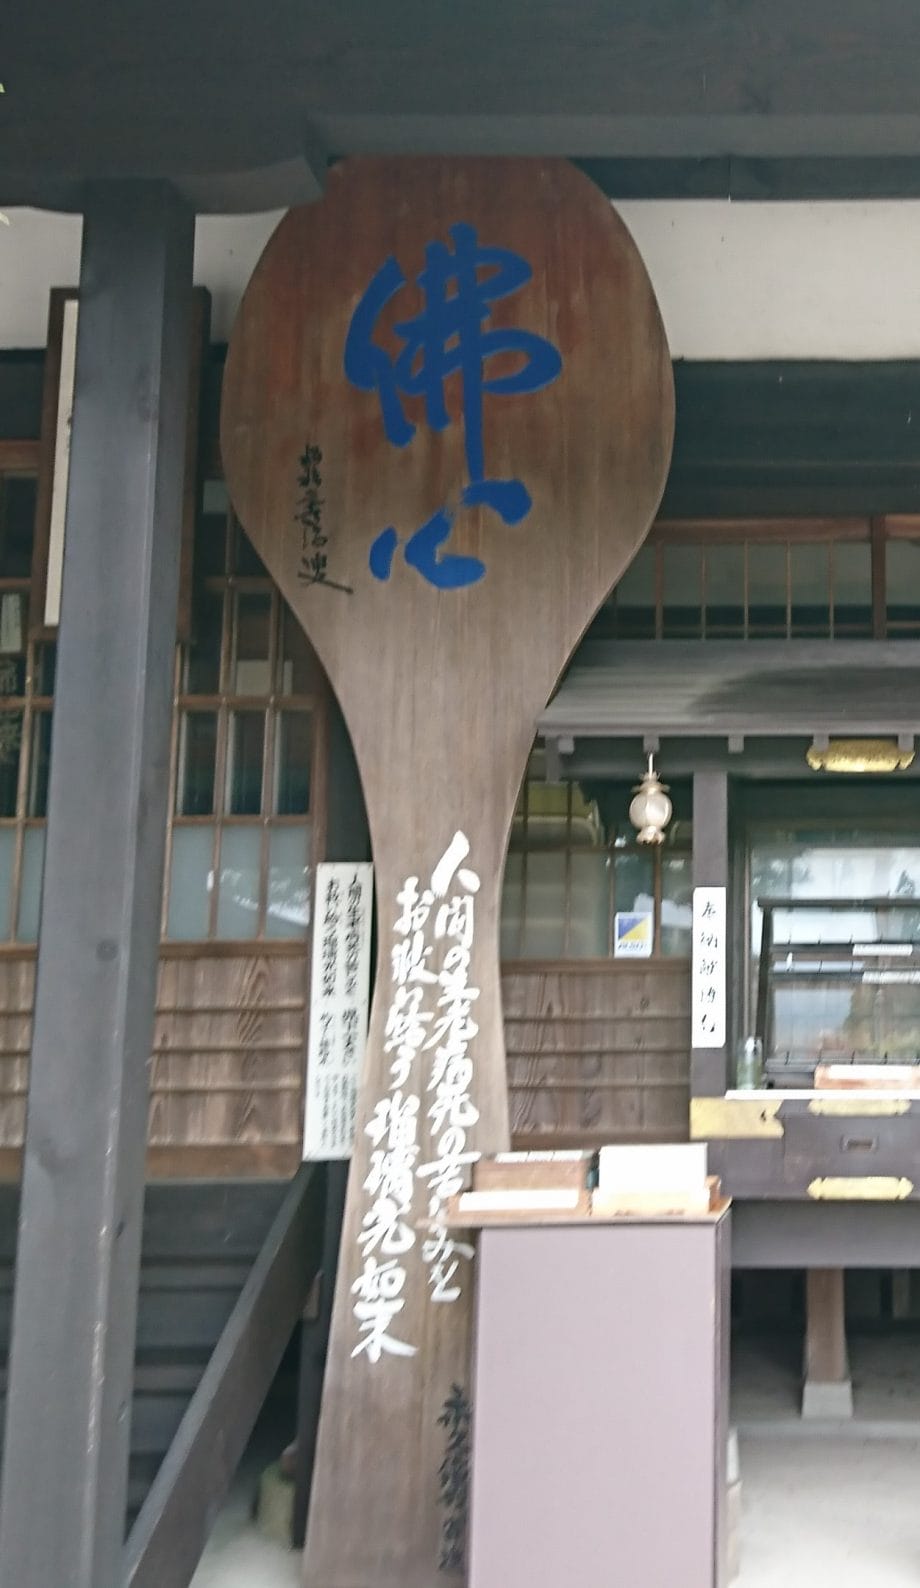 瑠璃光寺には県で一番おおきなしゃもじがあります